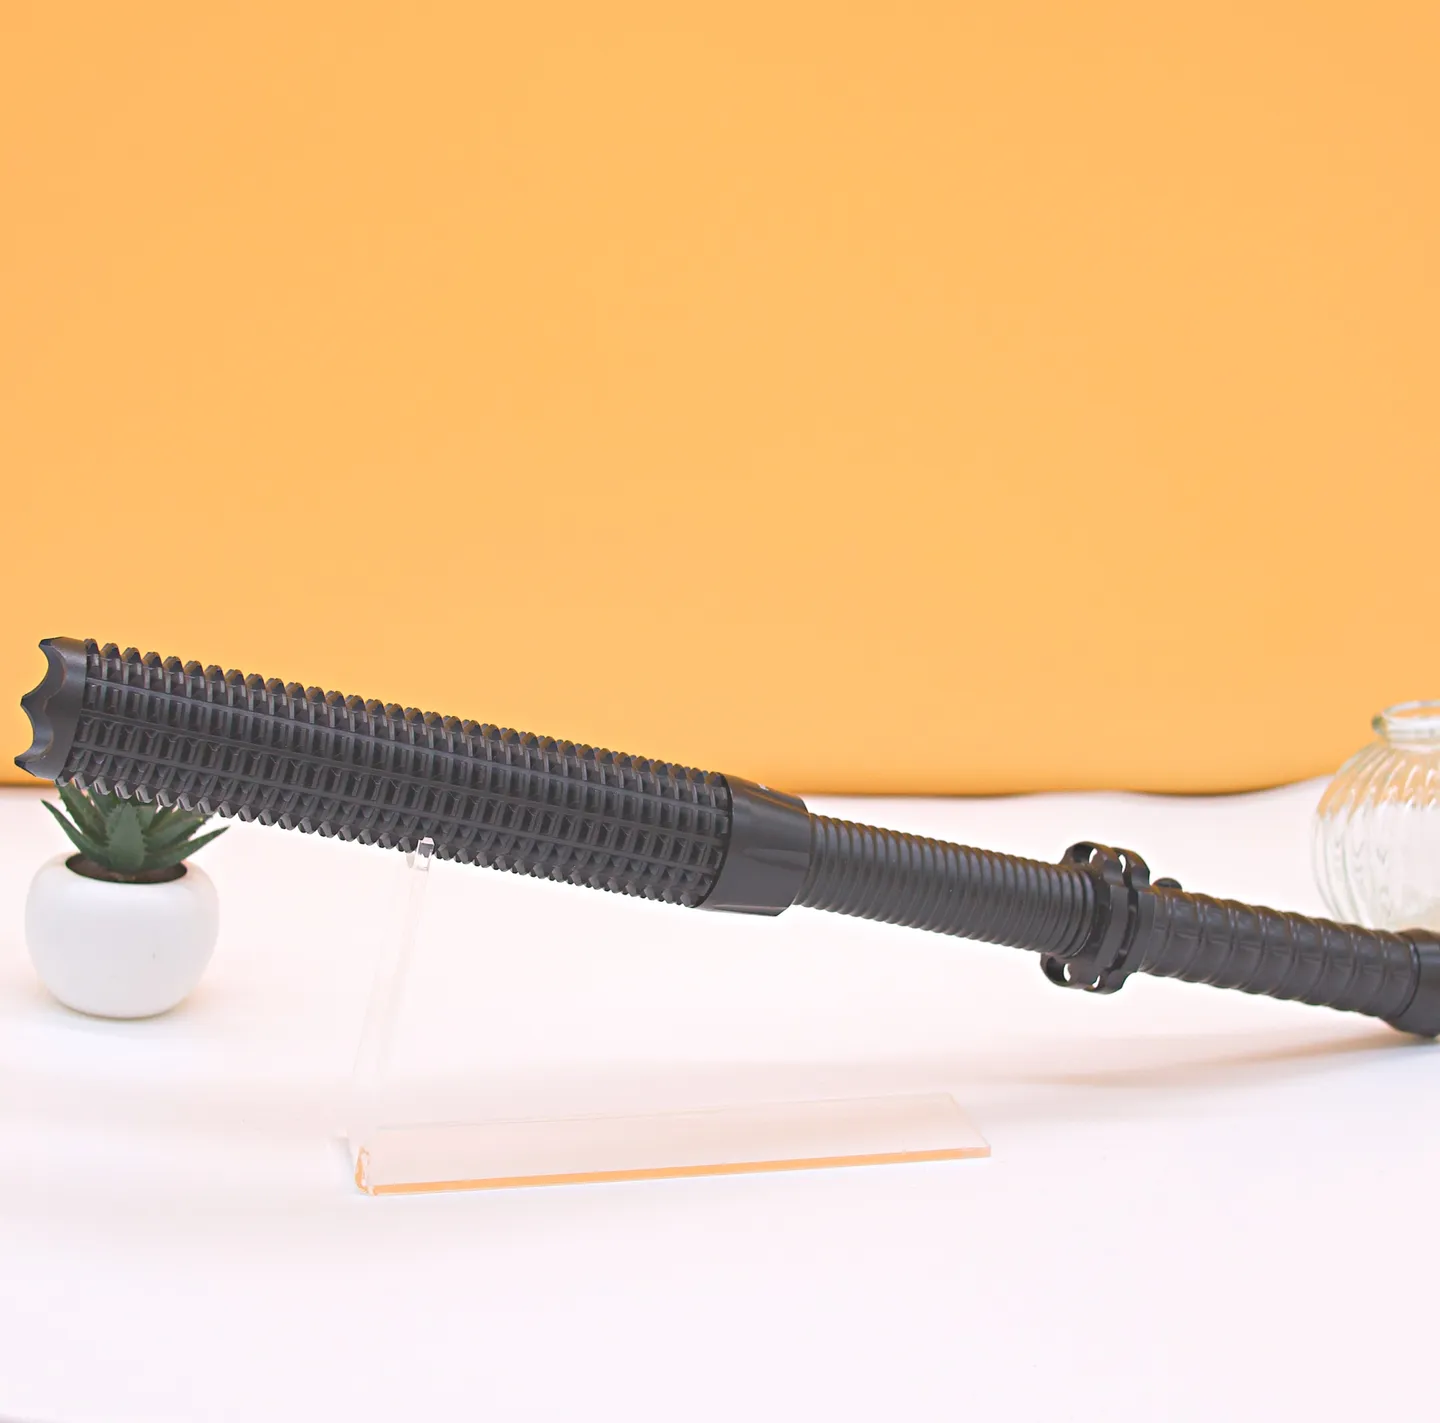 Matraque & Bâton - Matraque télescopique de défense en aluminium anodisé 46 cm